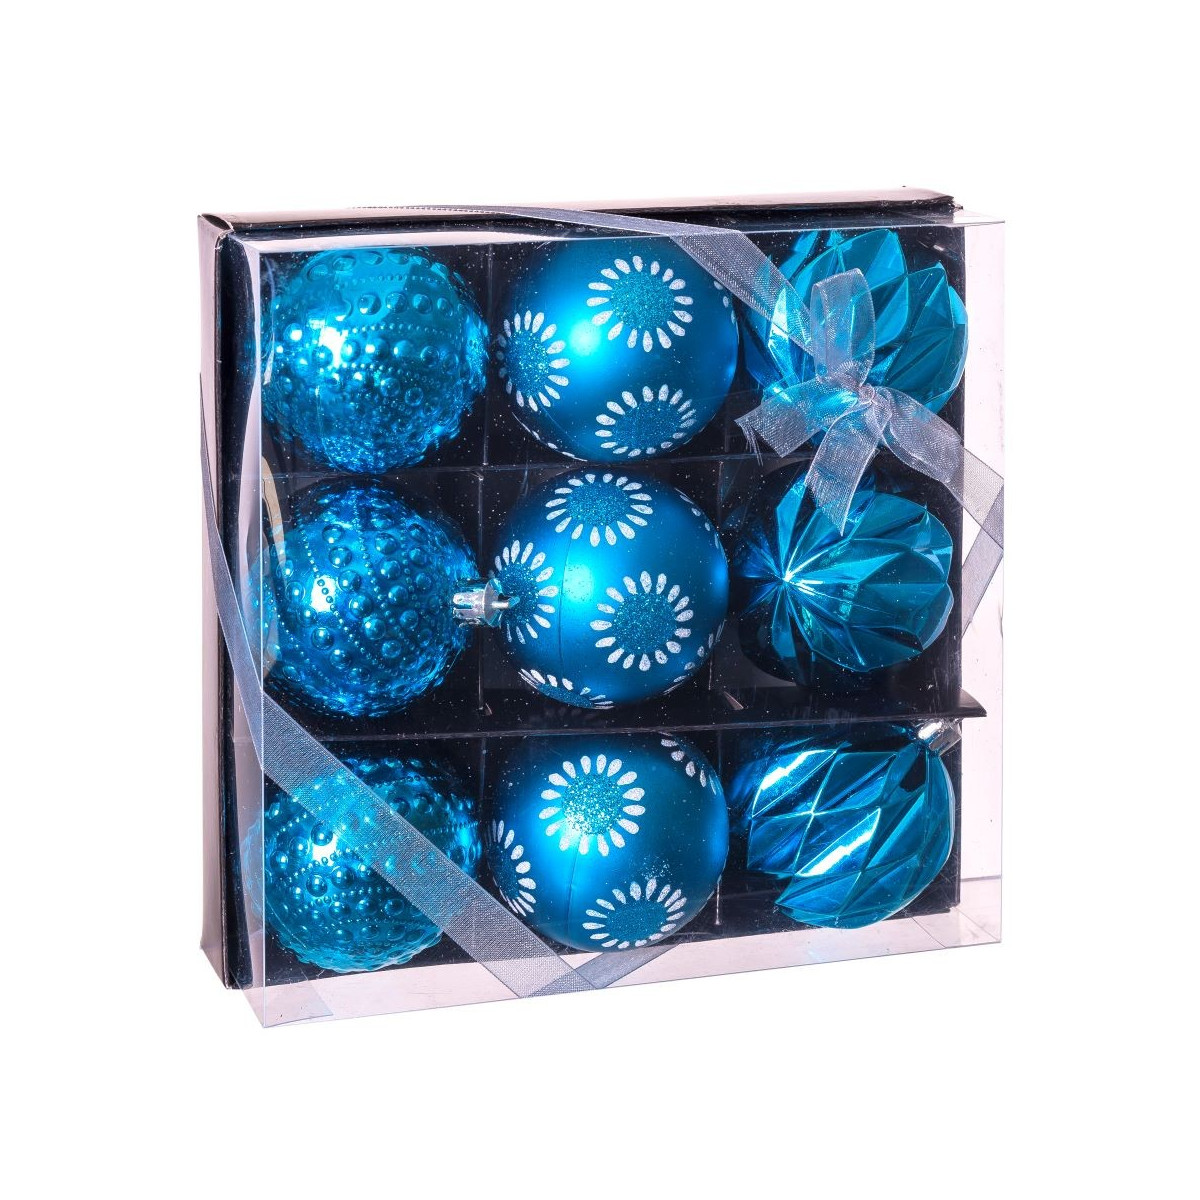 S 9 bolas decorada azul 8 x 8 x 6 cm